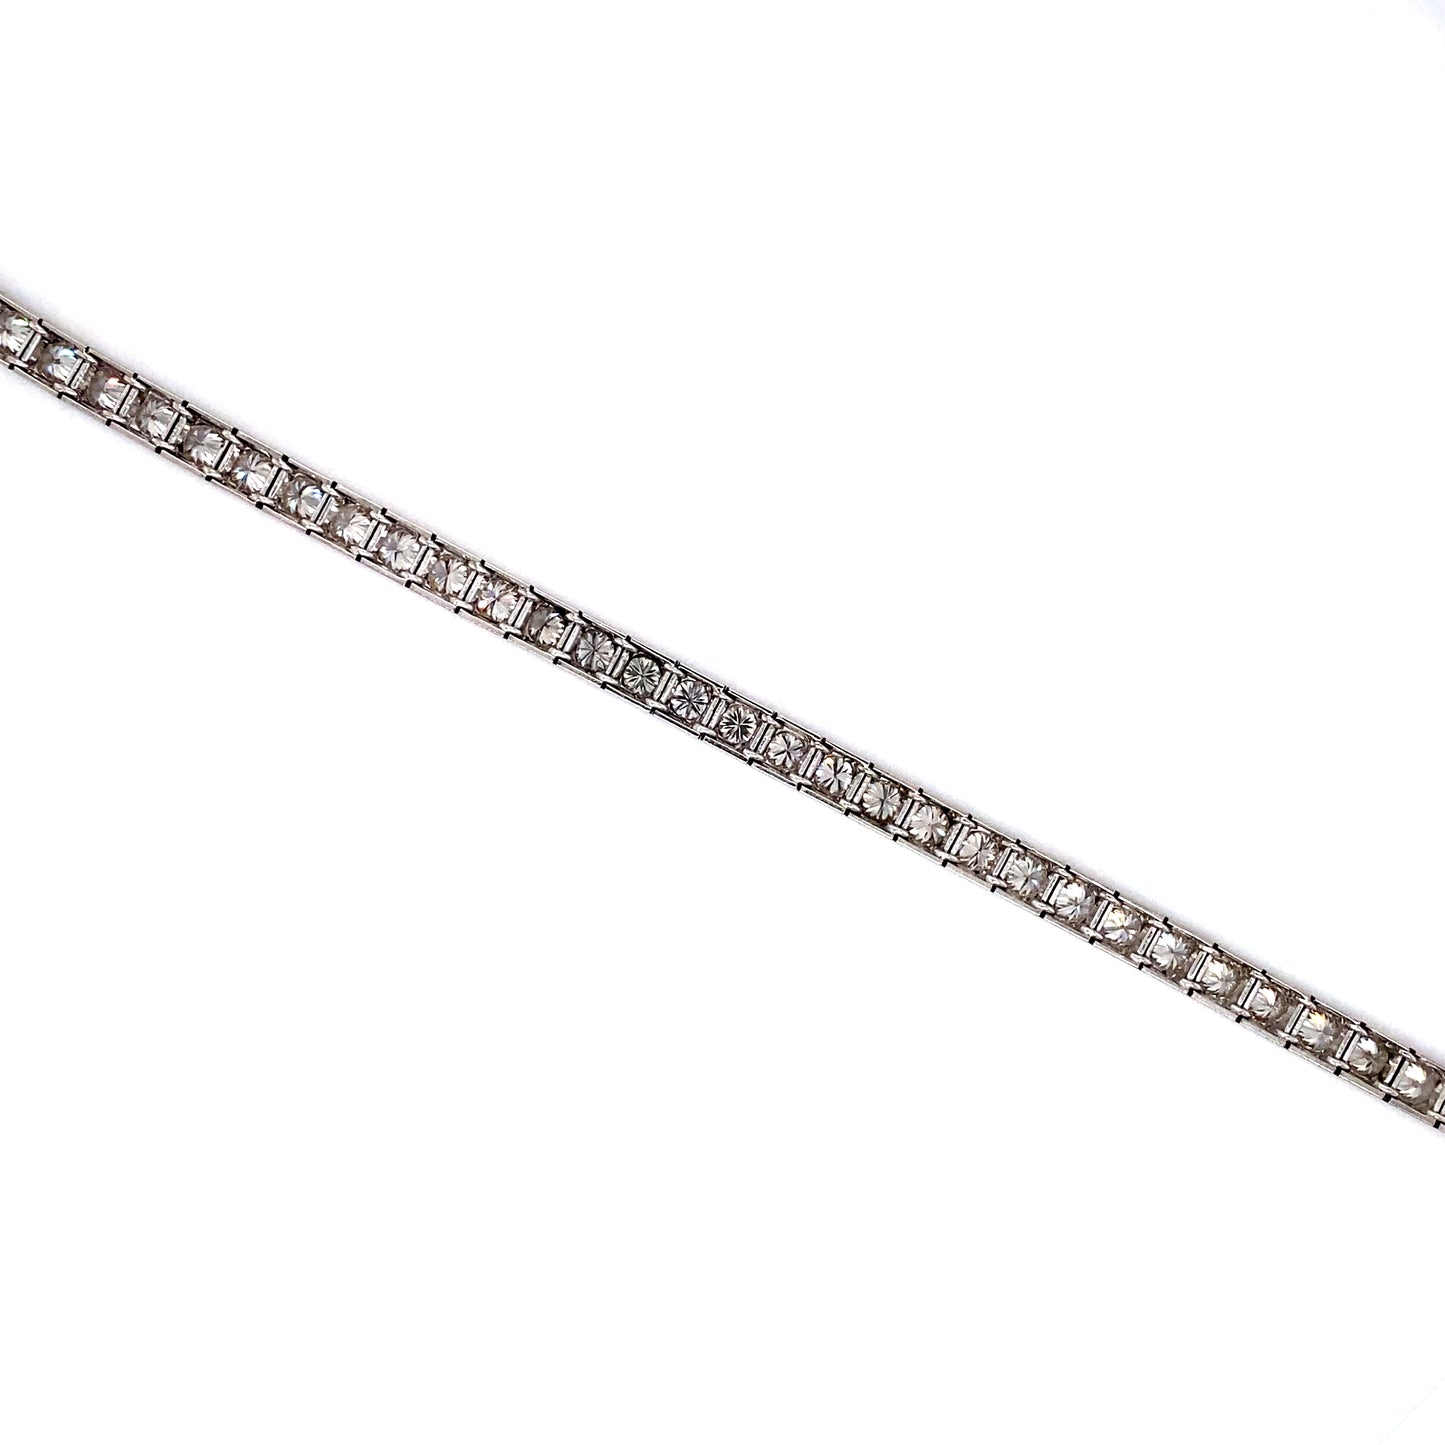 Circa 1950s 11.25 Carat Diamond Tennis Bracelet in Platinum